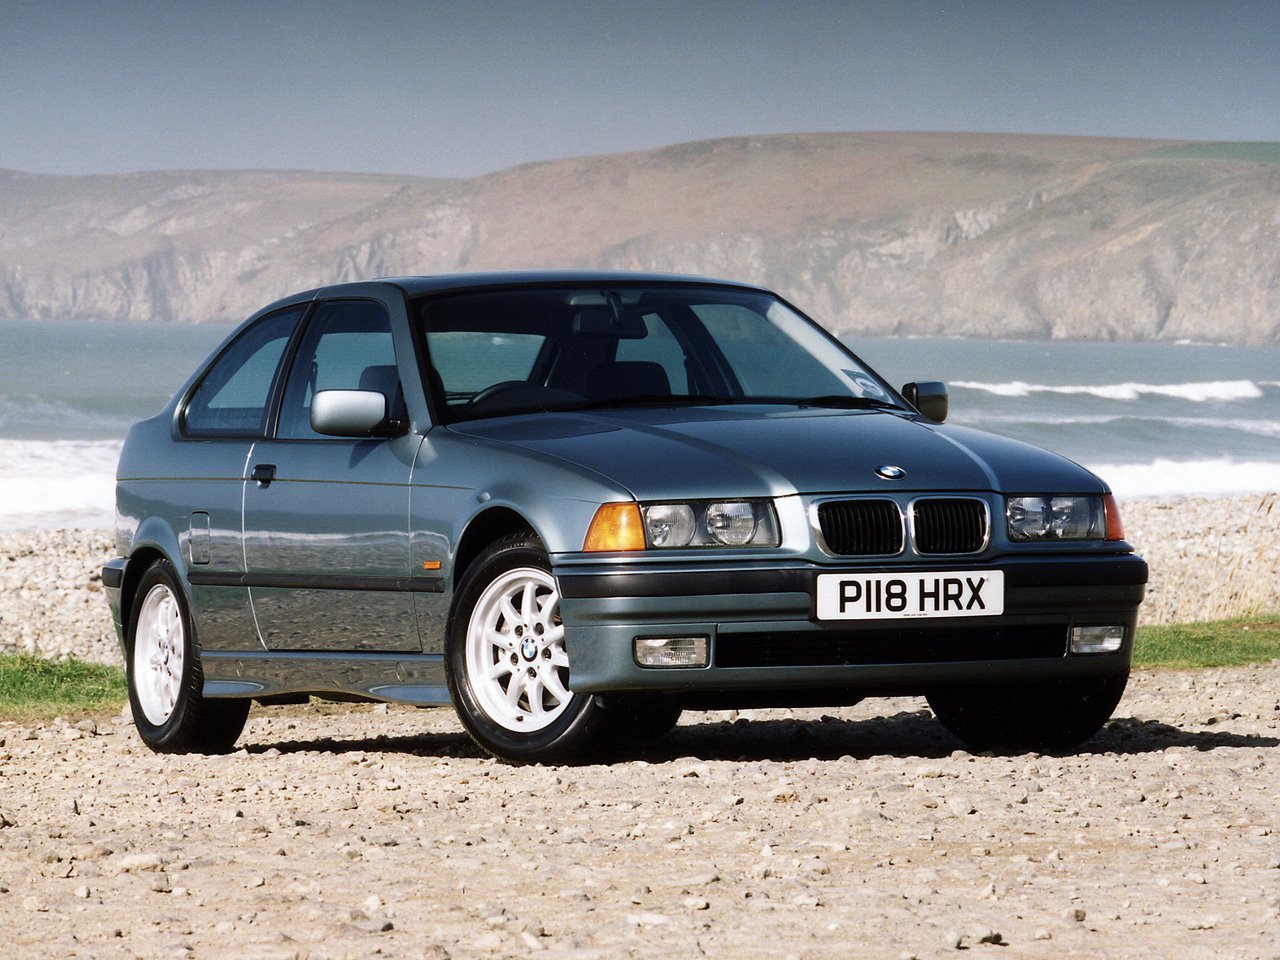 BMW 3 Серии, 1990 - 2000, III (E36), хэтчбек 3 дв.: купить, технические характеристики, отзывы и объявления